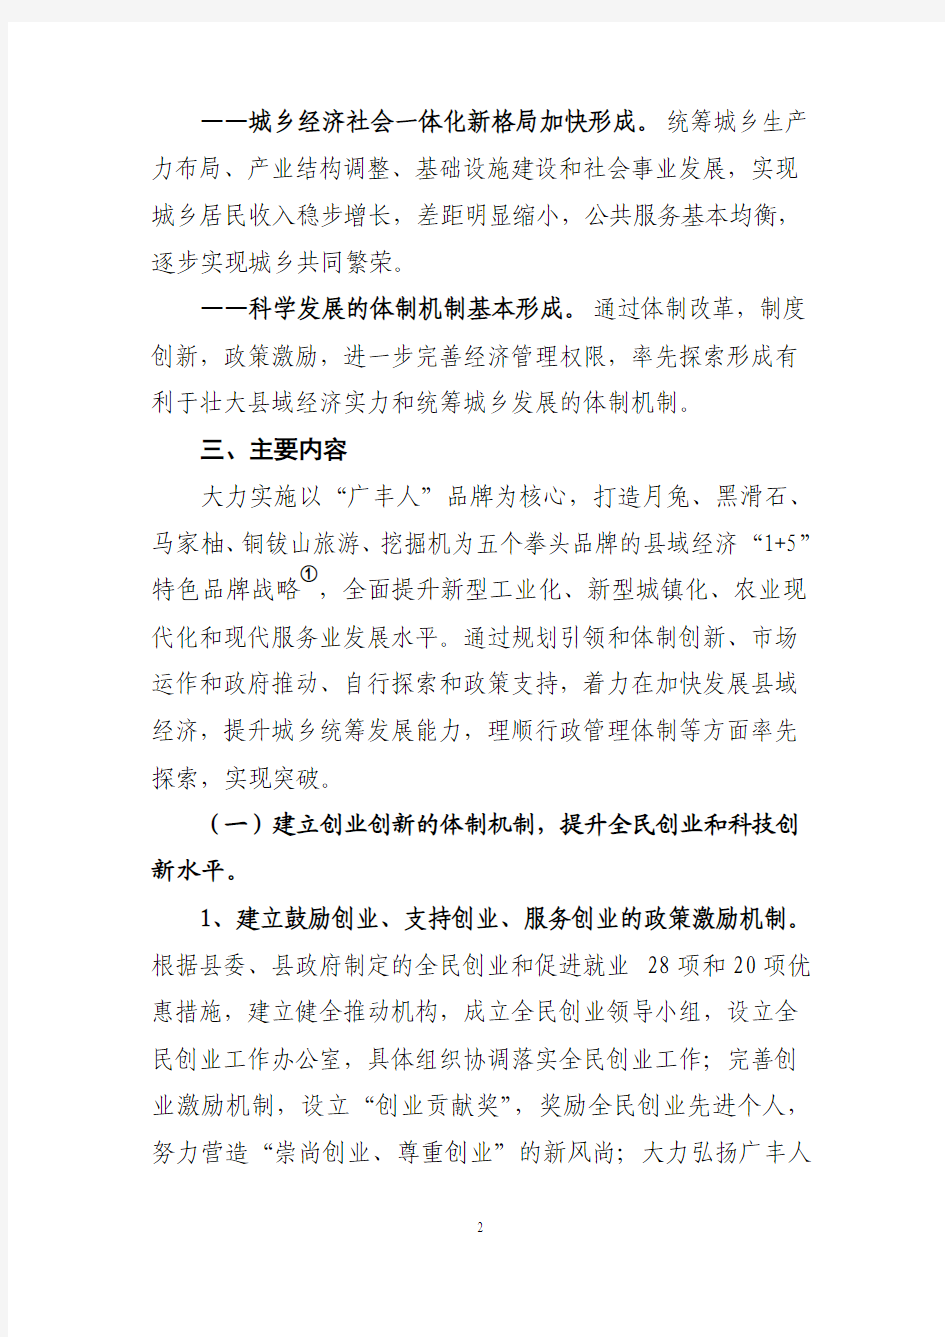 广丰县域经济发展综合配套改革试点方案(草案)